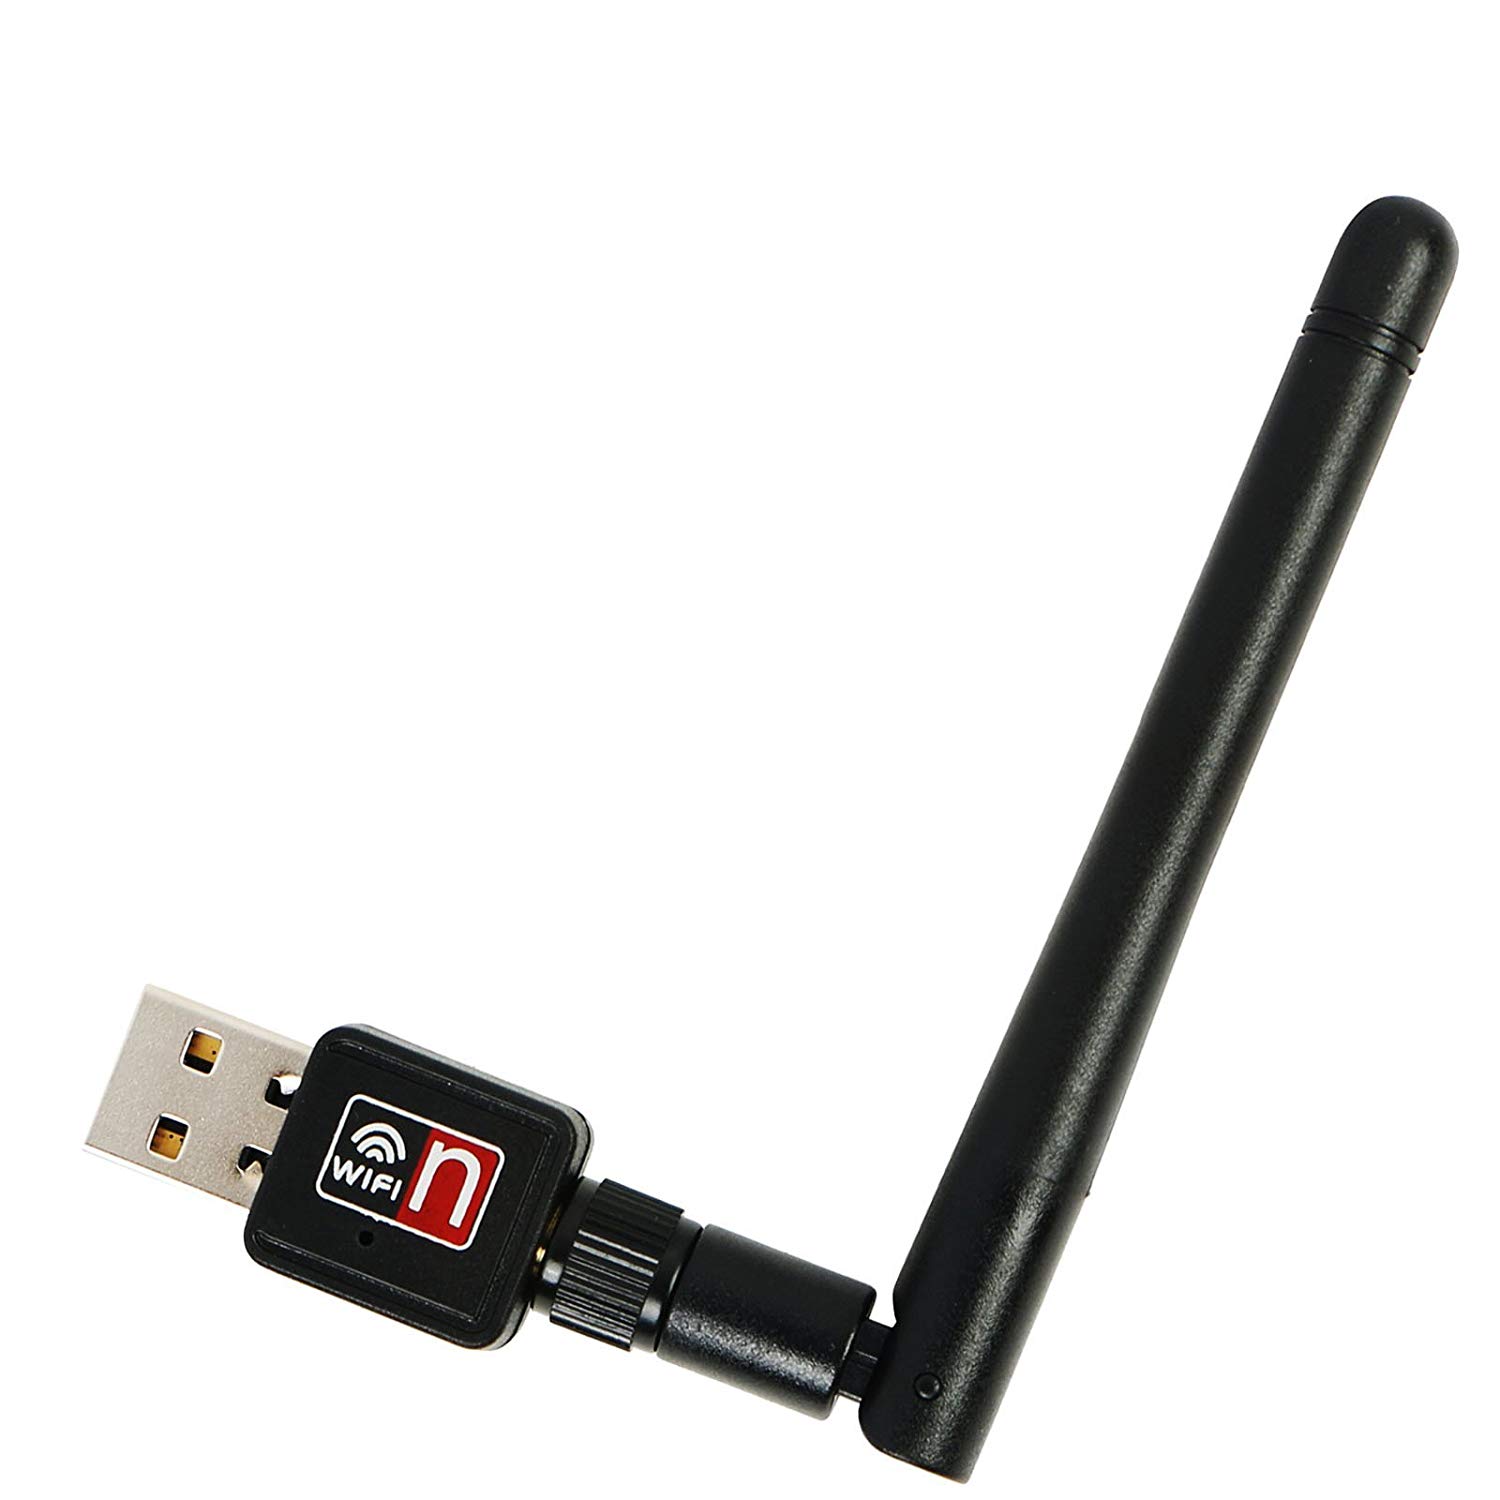 Wireless wifi usb adapter. USB Wi-Fi адаптер (802.11n). WIFI USB Adapter 802.11n. USB - Wi-Fi адаптер (2,4 GHZ). USB WIFI адаптер 11n.